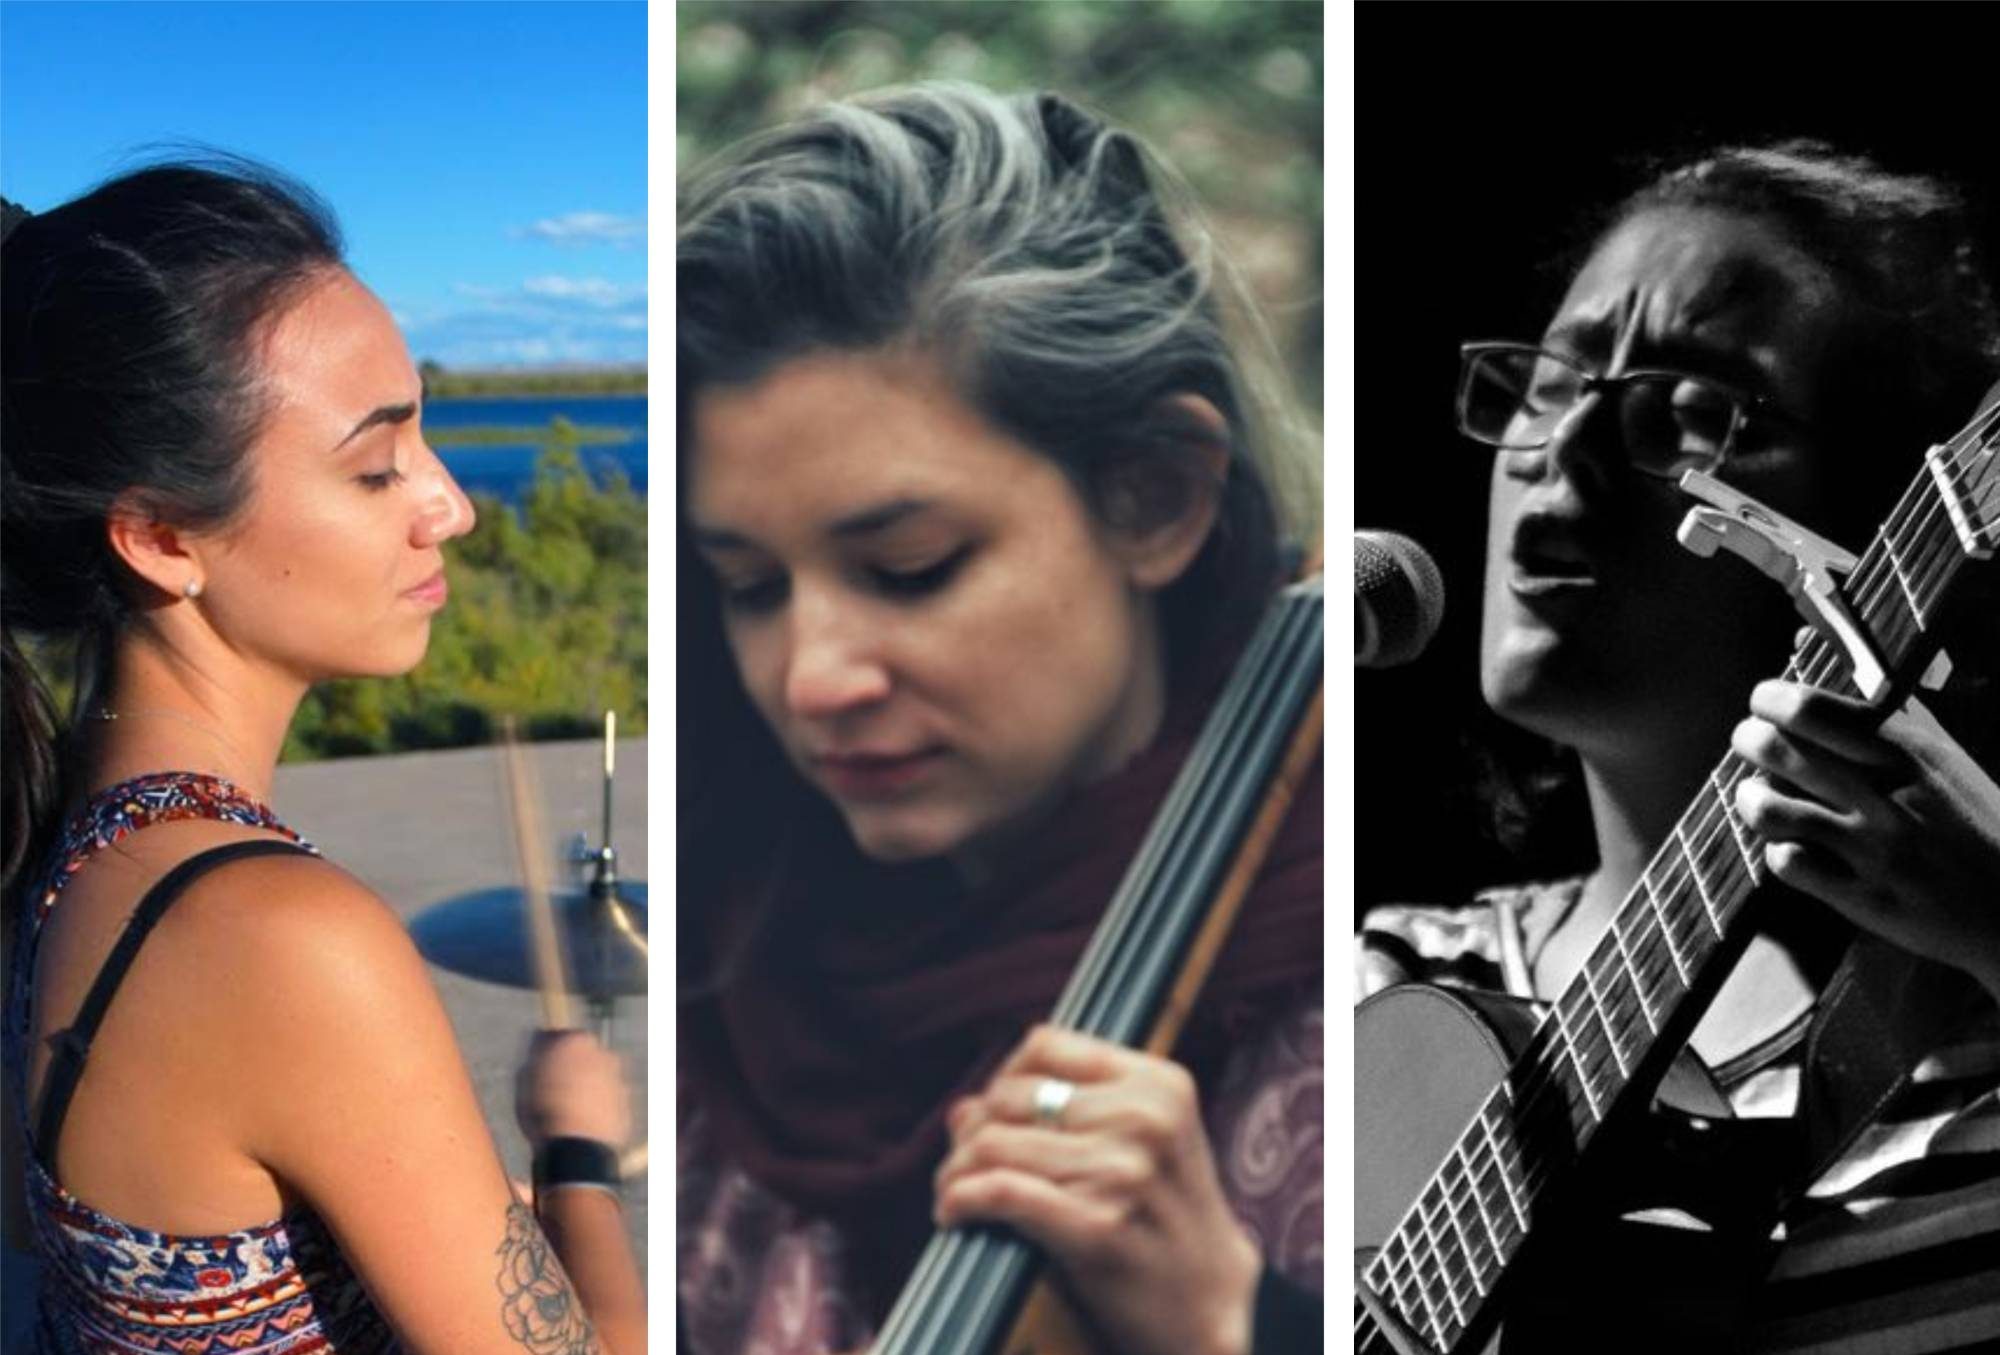 Florencia Olatte, Celia Eymann y Lara Muñoz, las músicas que serán parte, junto a Jeremías Sartori, de la apertura del ciclo "Canción de Estepa".